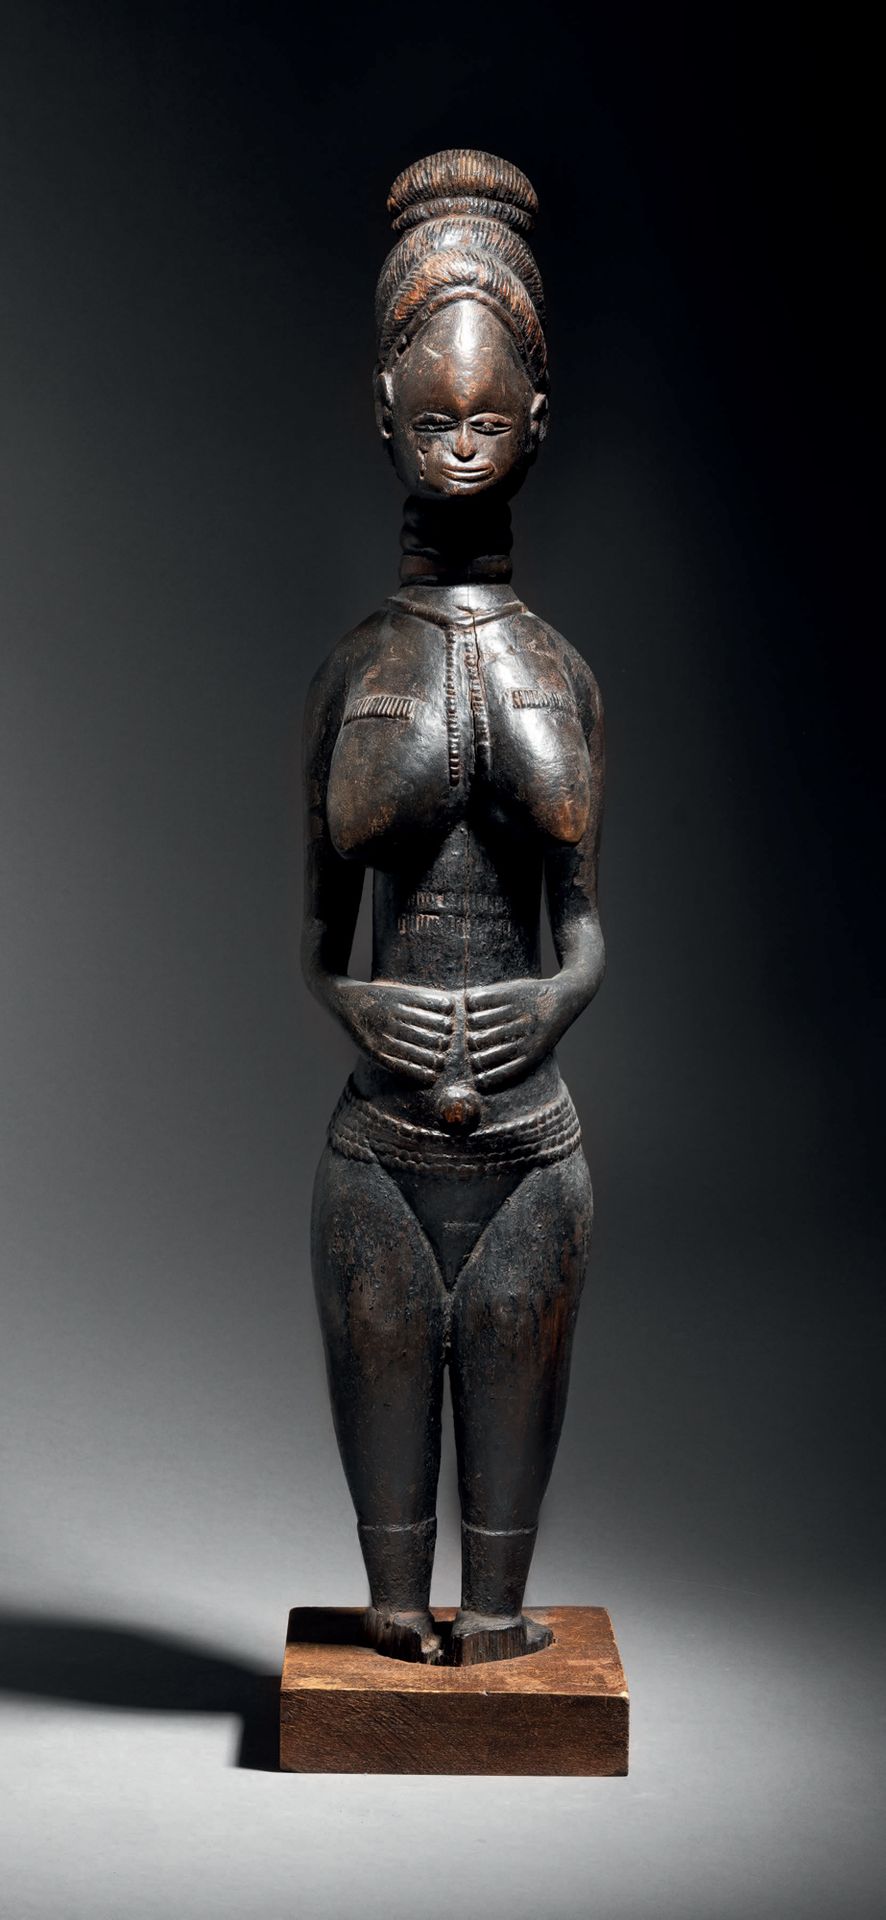 Null Ɵ Mende weibliche Statue, Sierra Leone
Holz mit schwarzer Patina
H. 67 cm
M&hellip;